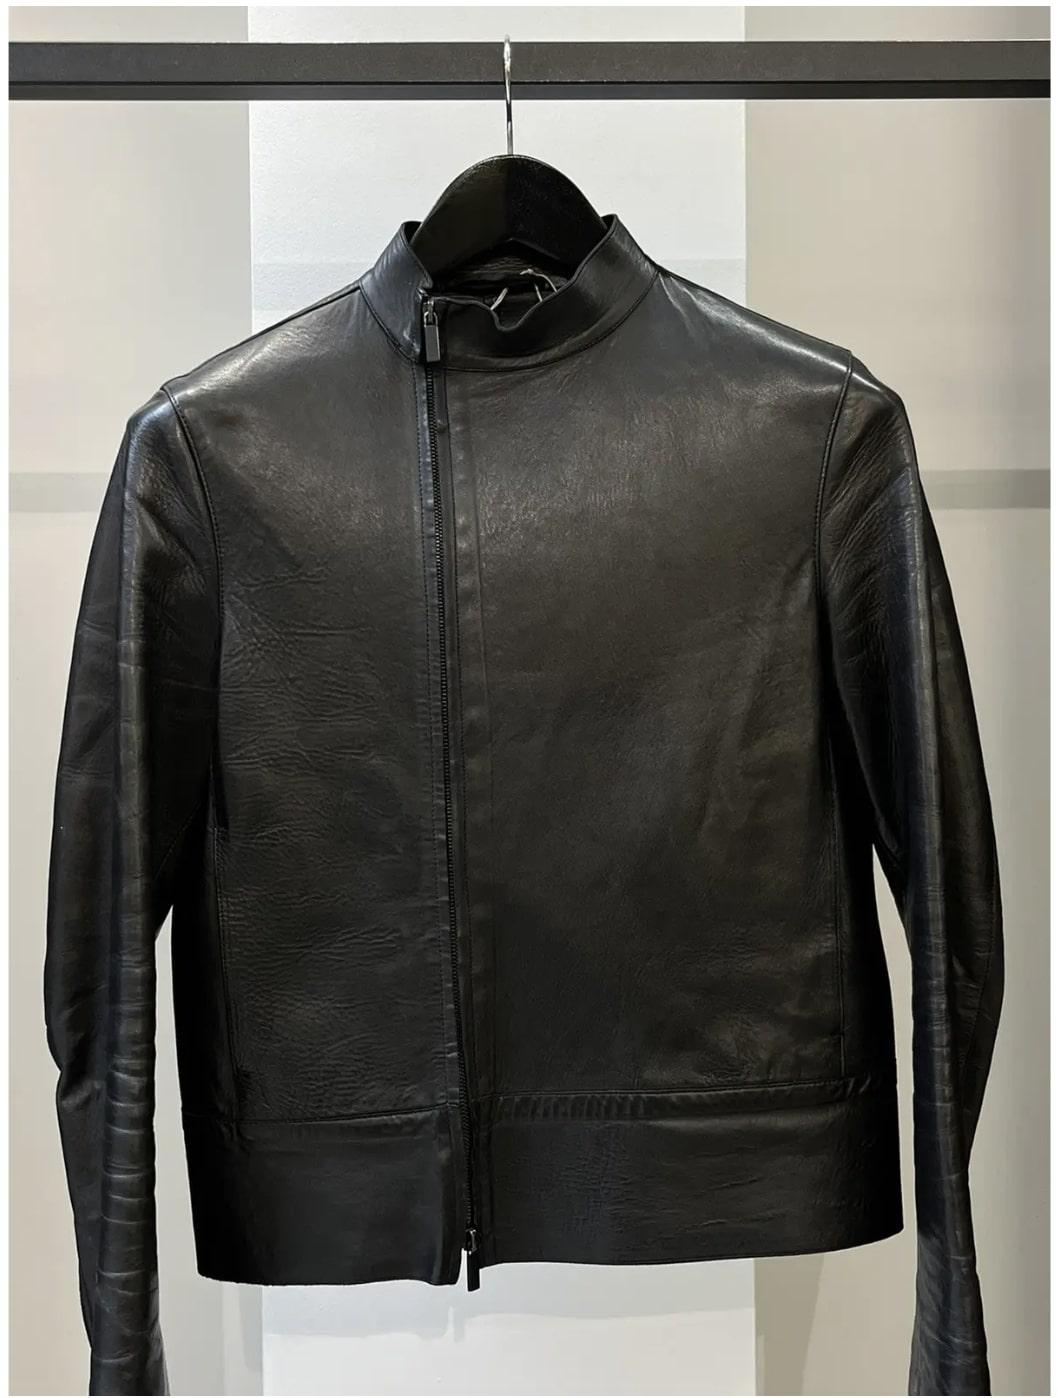 Gucci
Tom Ford FW 1999 Leather Zip Moto Jacket
Taille petite

Magnifique veste de moto en cuir Gucci Tom Ford FW99 en taille petite. En très bon état, sans défaut, fabriqué en Italie. Extrêmement rare.

